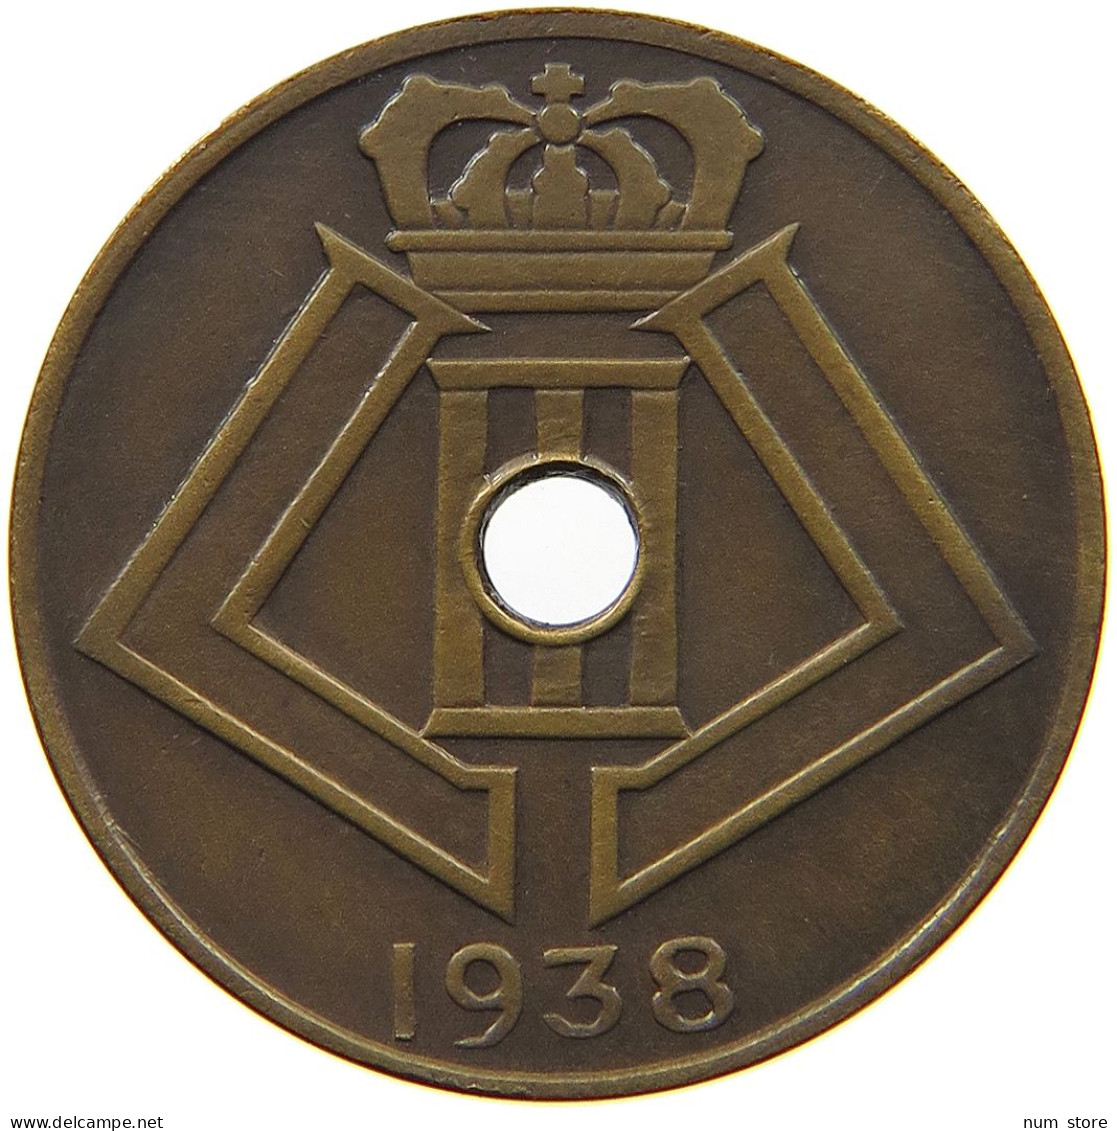 BELGIUM 50 CENTIMES 1938 50 CENTIMES 1938 PATTERN JESPERS MATTE BRONZE RARE #t081 0031 - Non Classificati